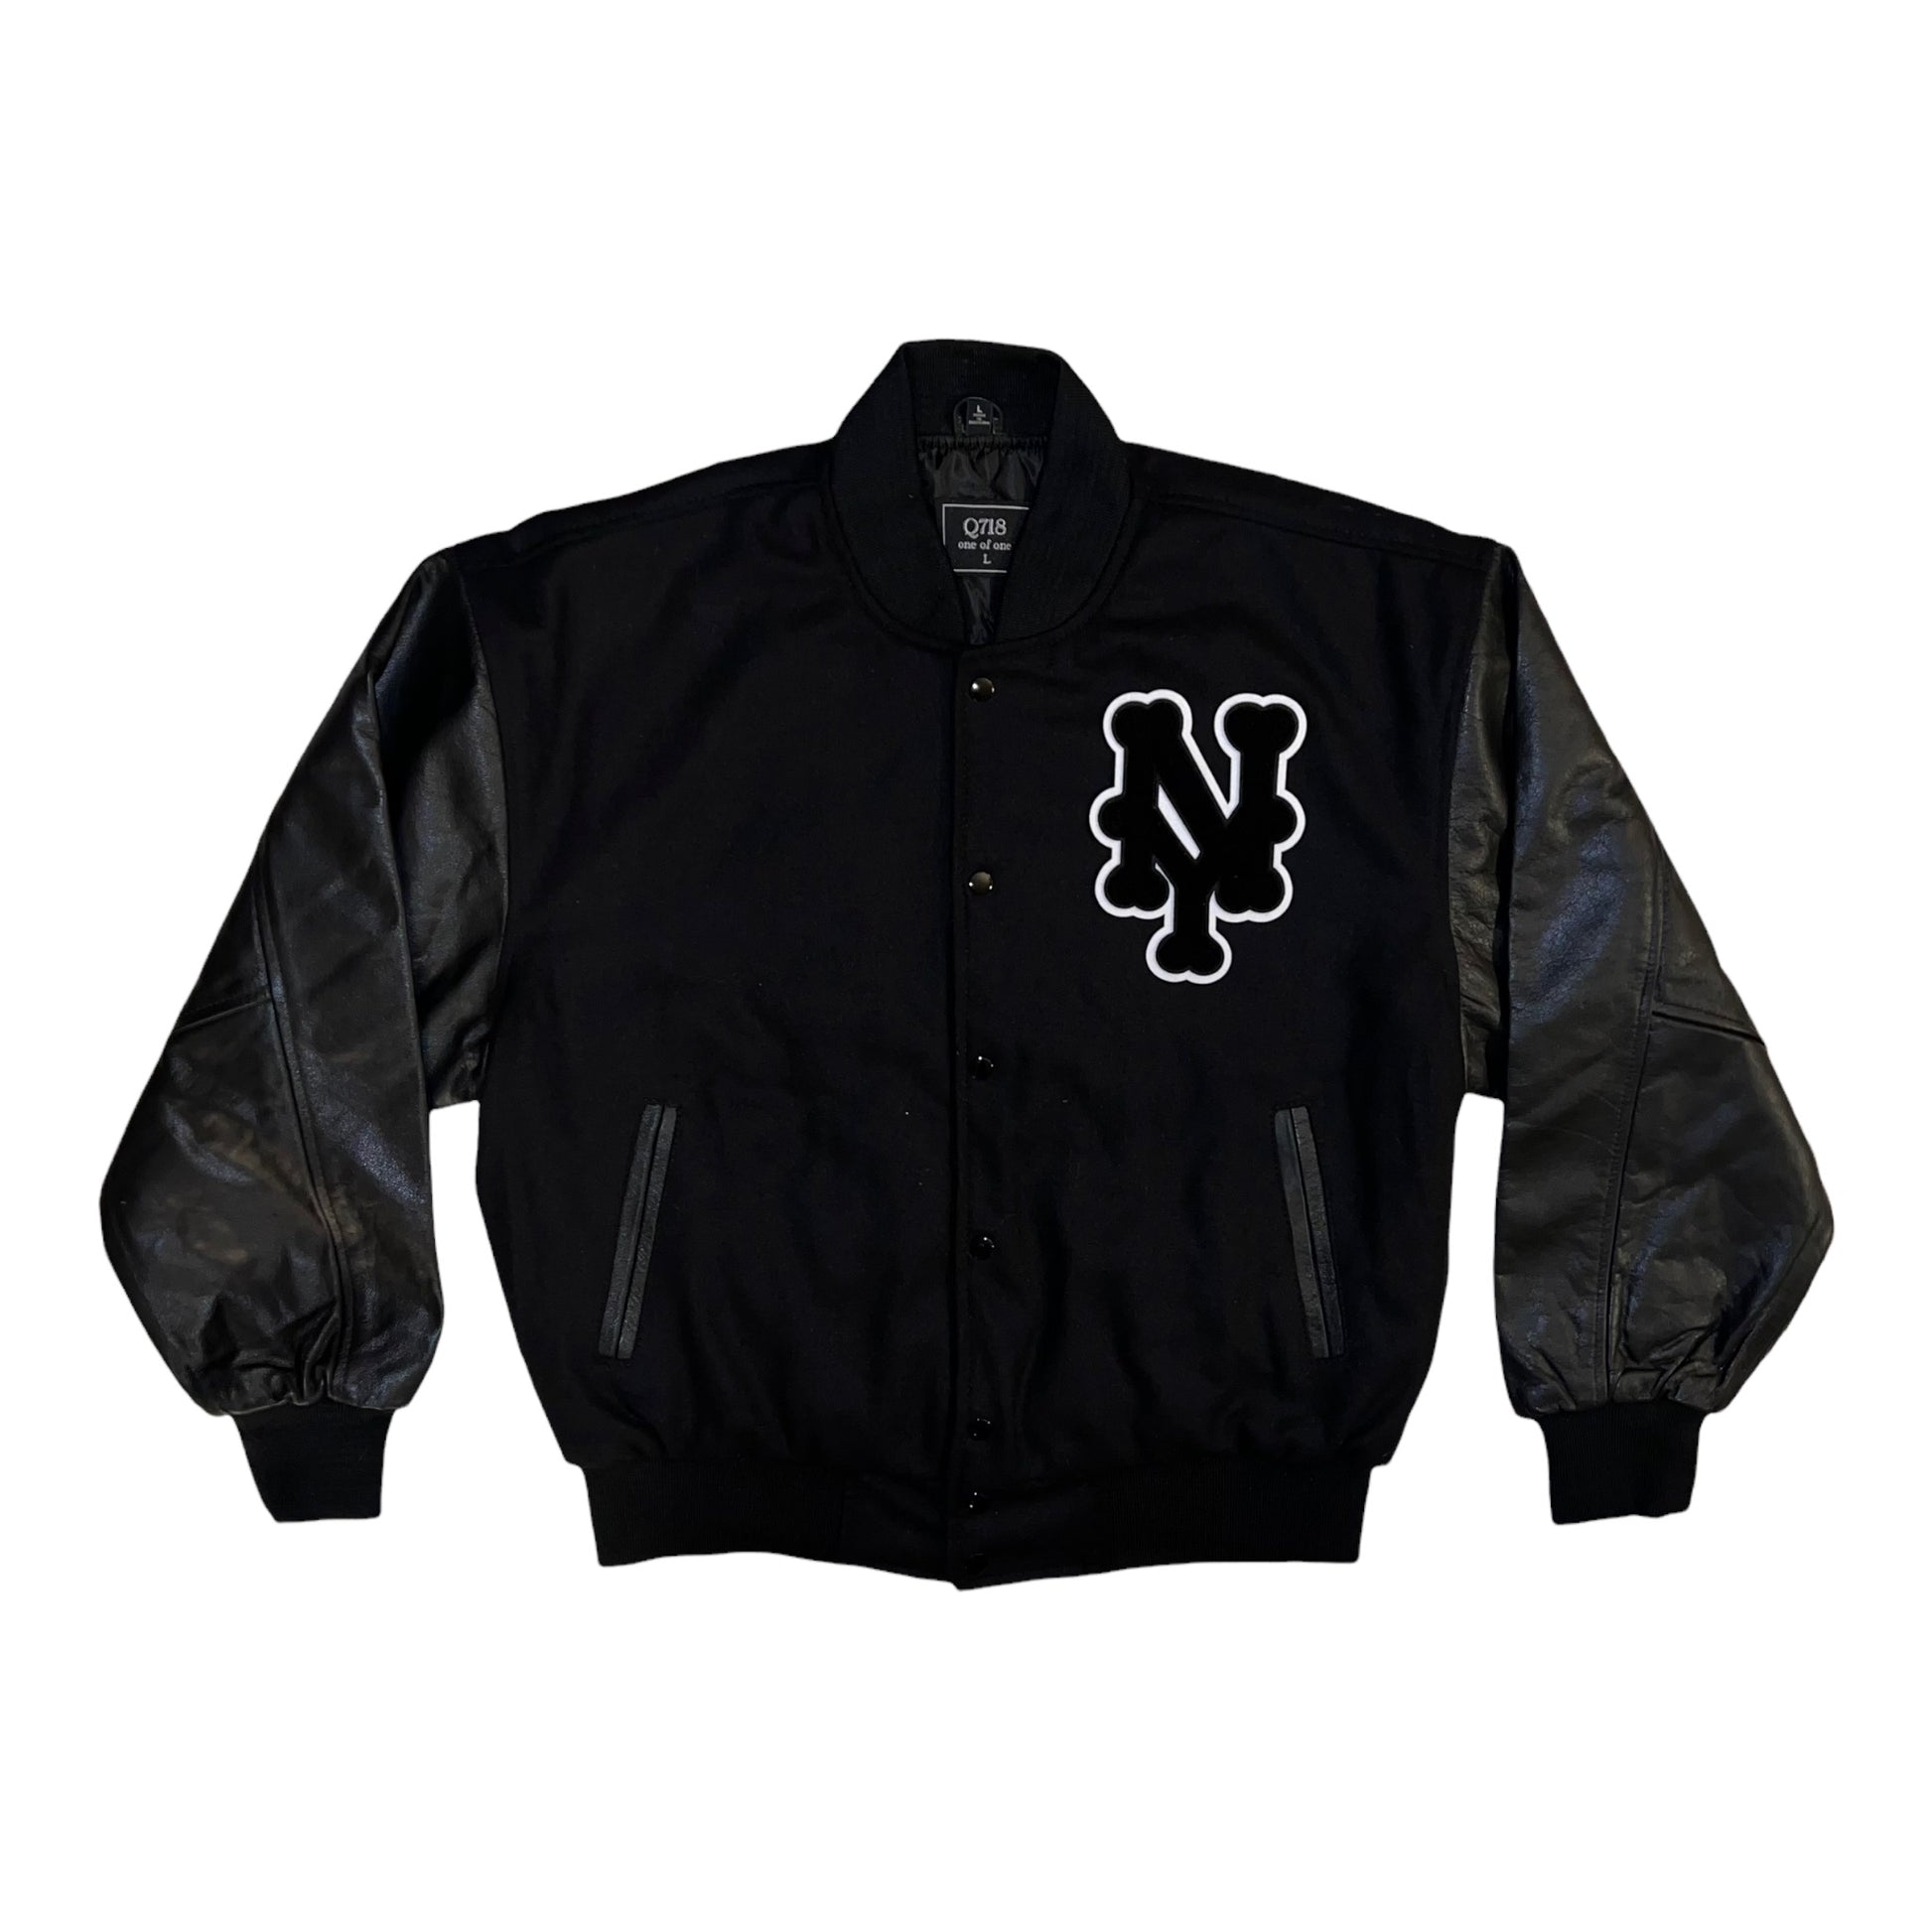 Varsity Jacket Metropolitans – Q718